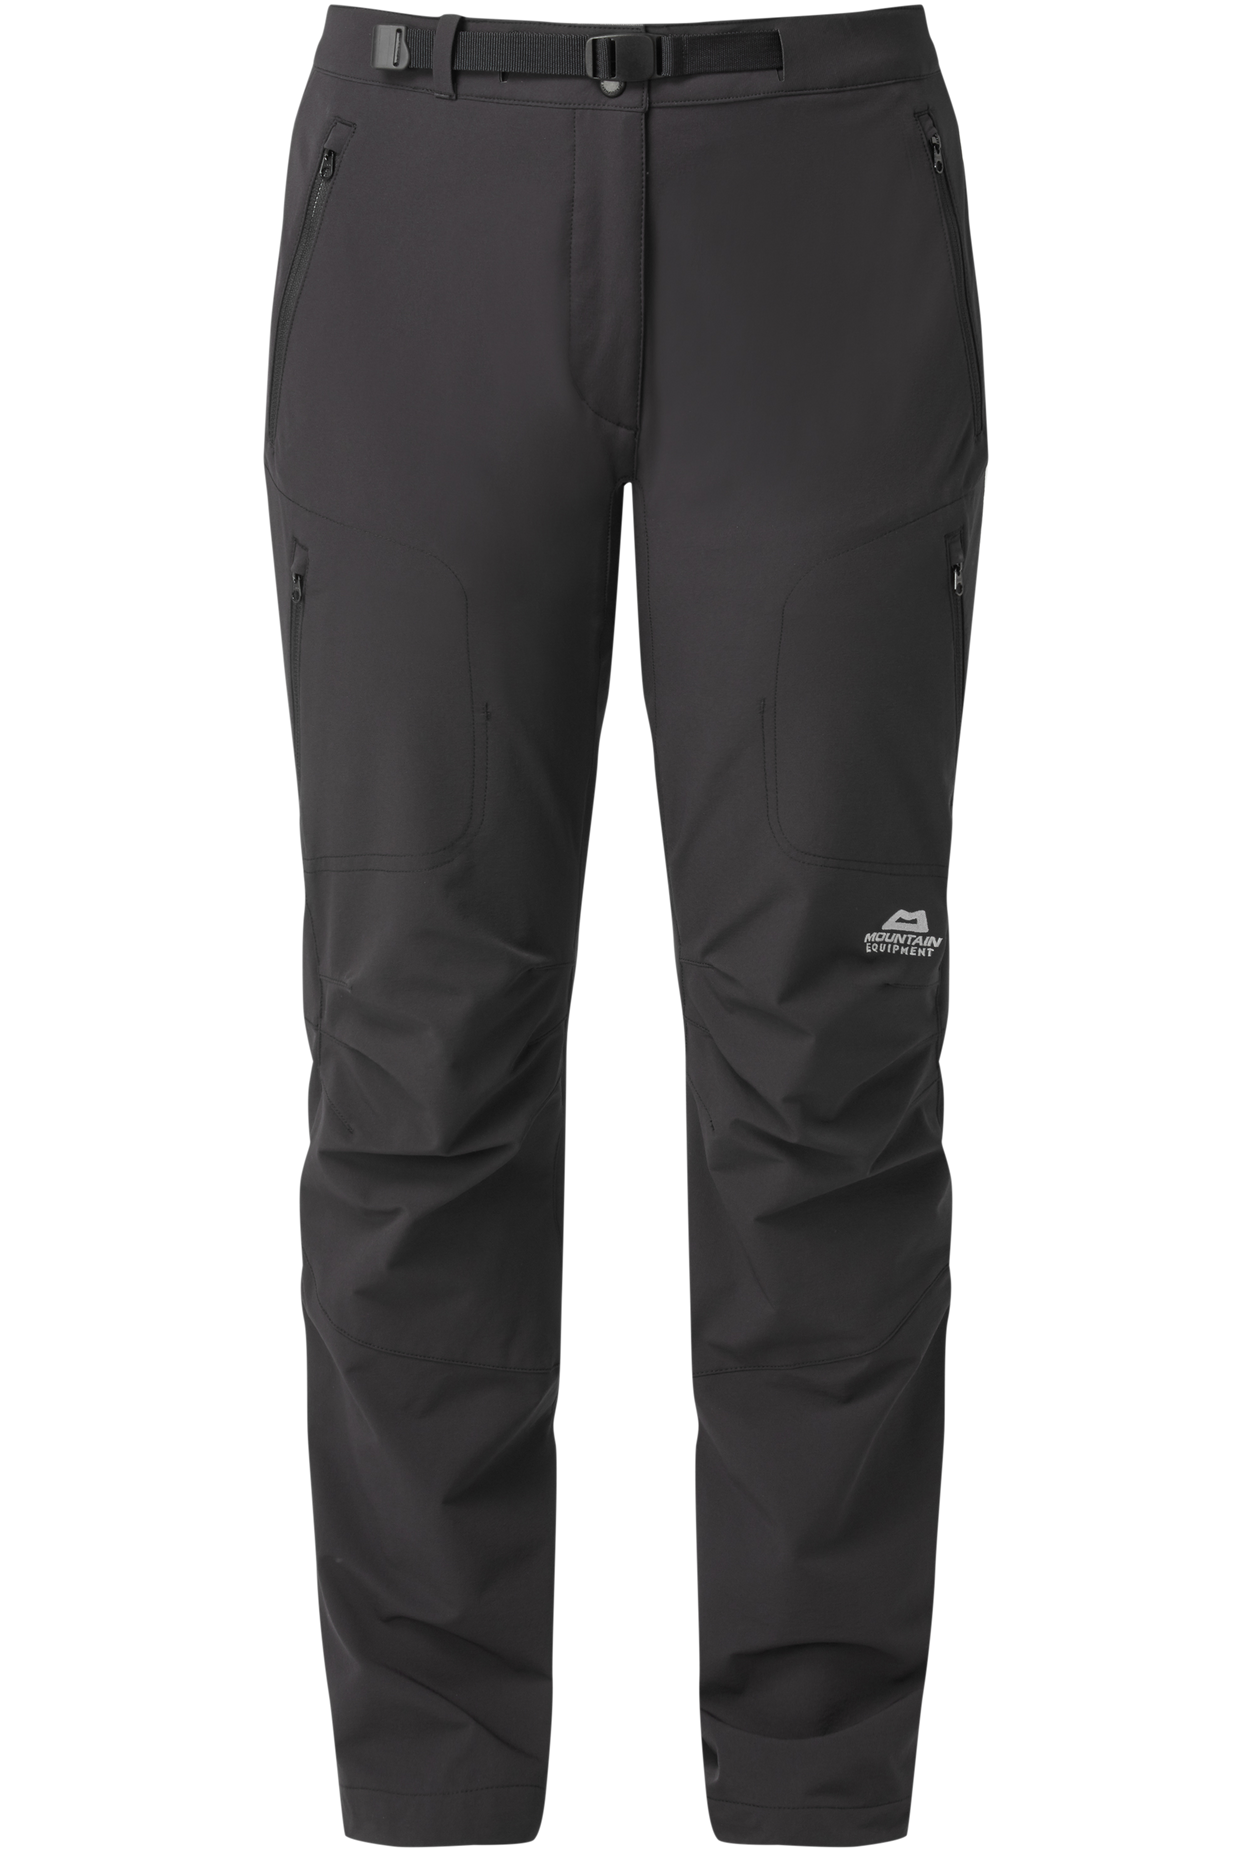 Mountain Equipment dámské softshellové kalhoty Chamois Wmns Pant - prodloužené Barva: black, Velikost: 8/XS